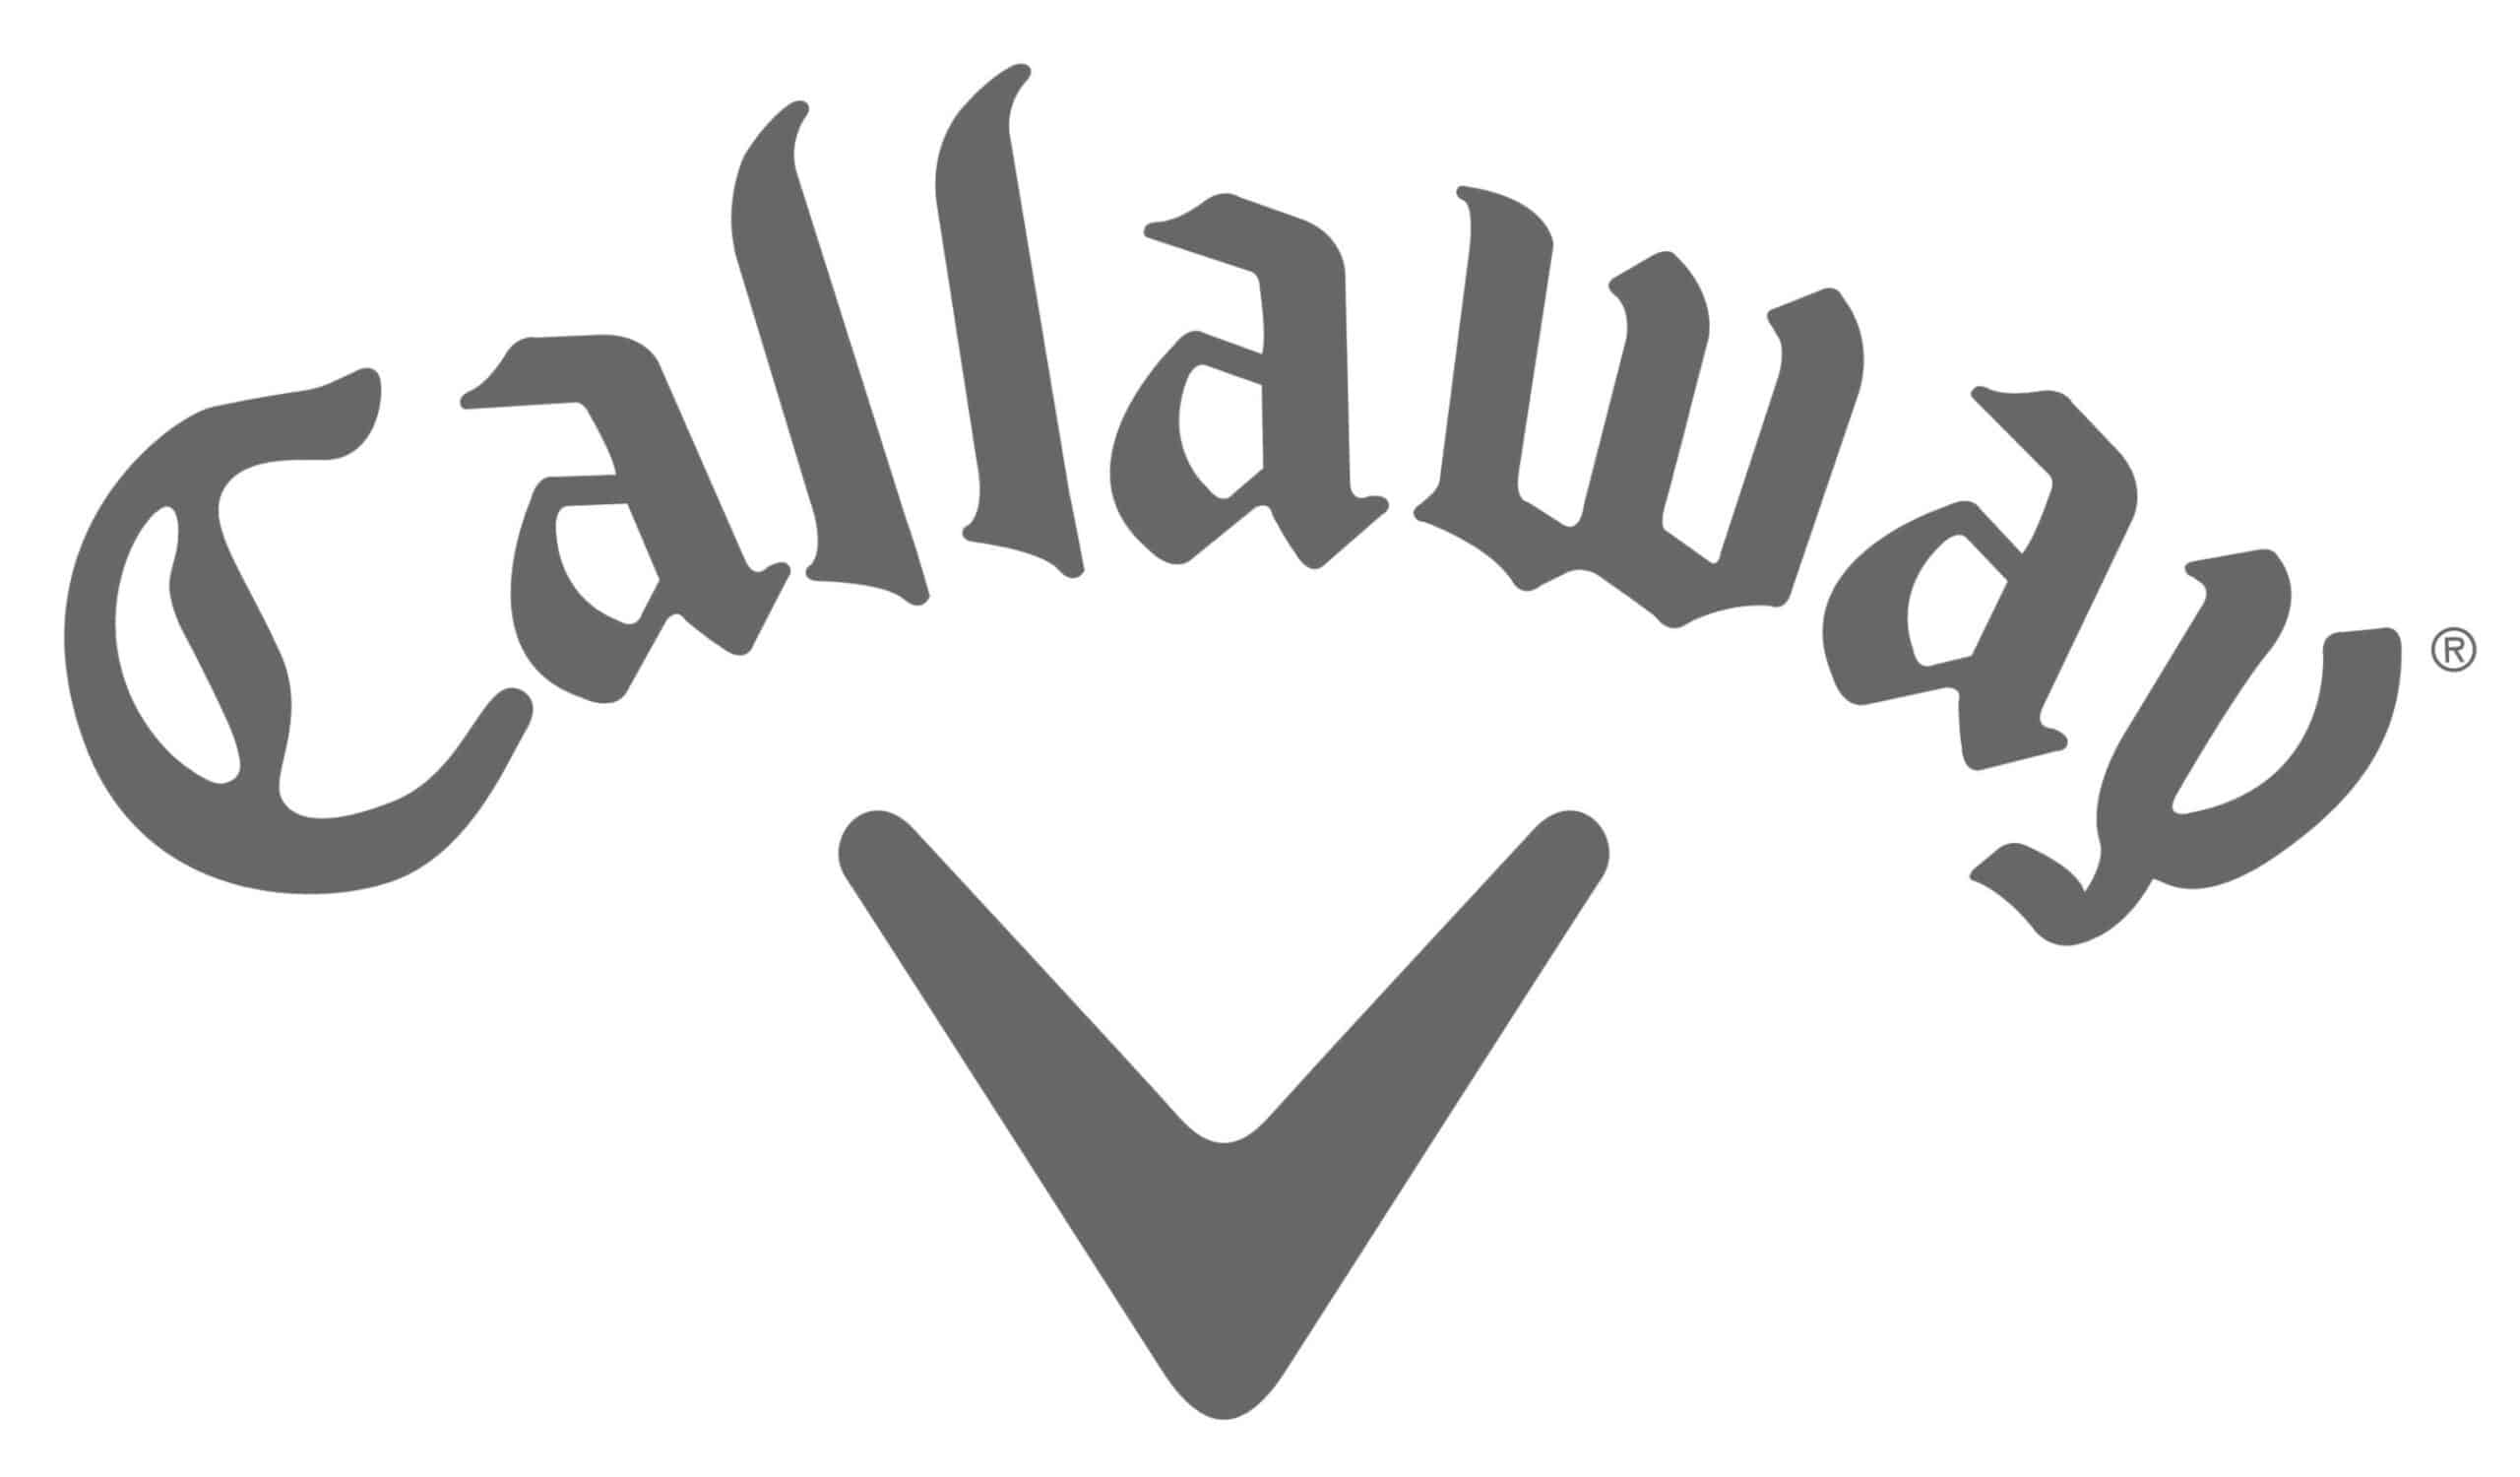 Callaway golf logo v2 scaled - Club Fittings - Sticks 96 Golf